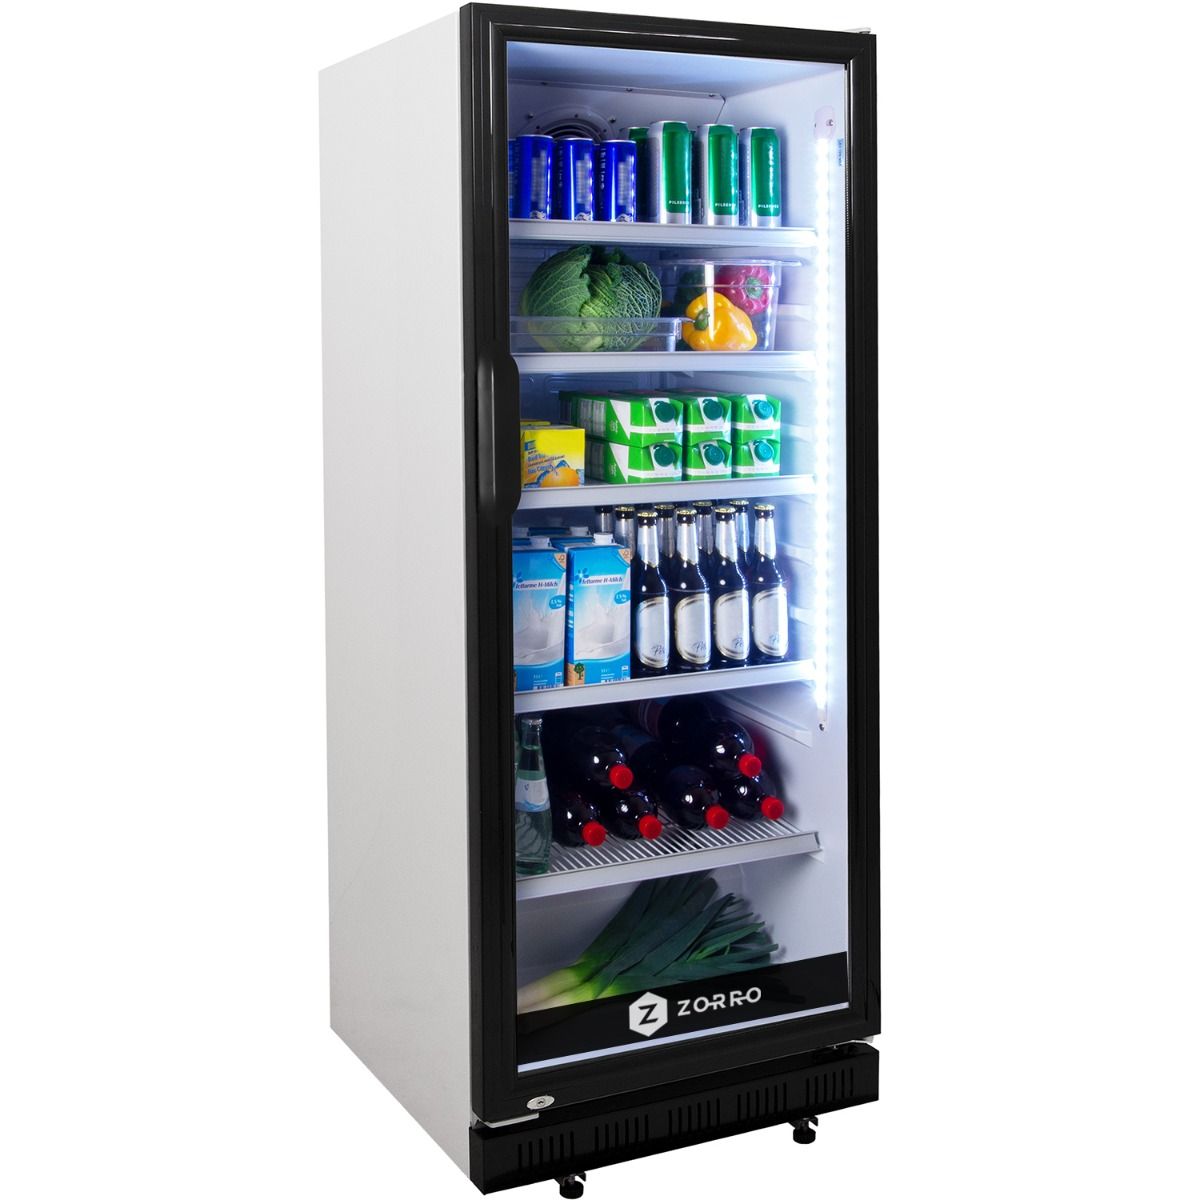 Getränkekühlschrank LG-310BB weiss/schwarz, mit 310 Litern Volumen